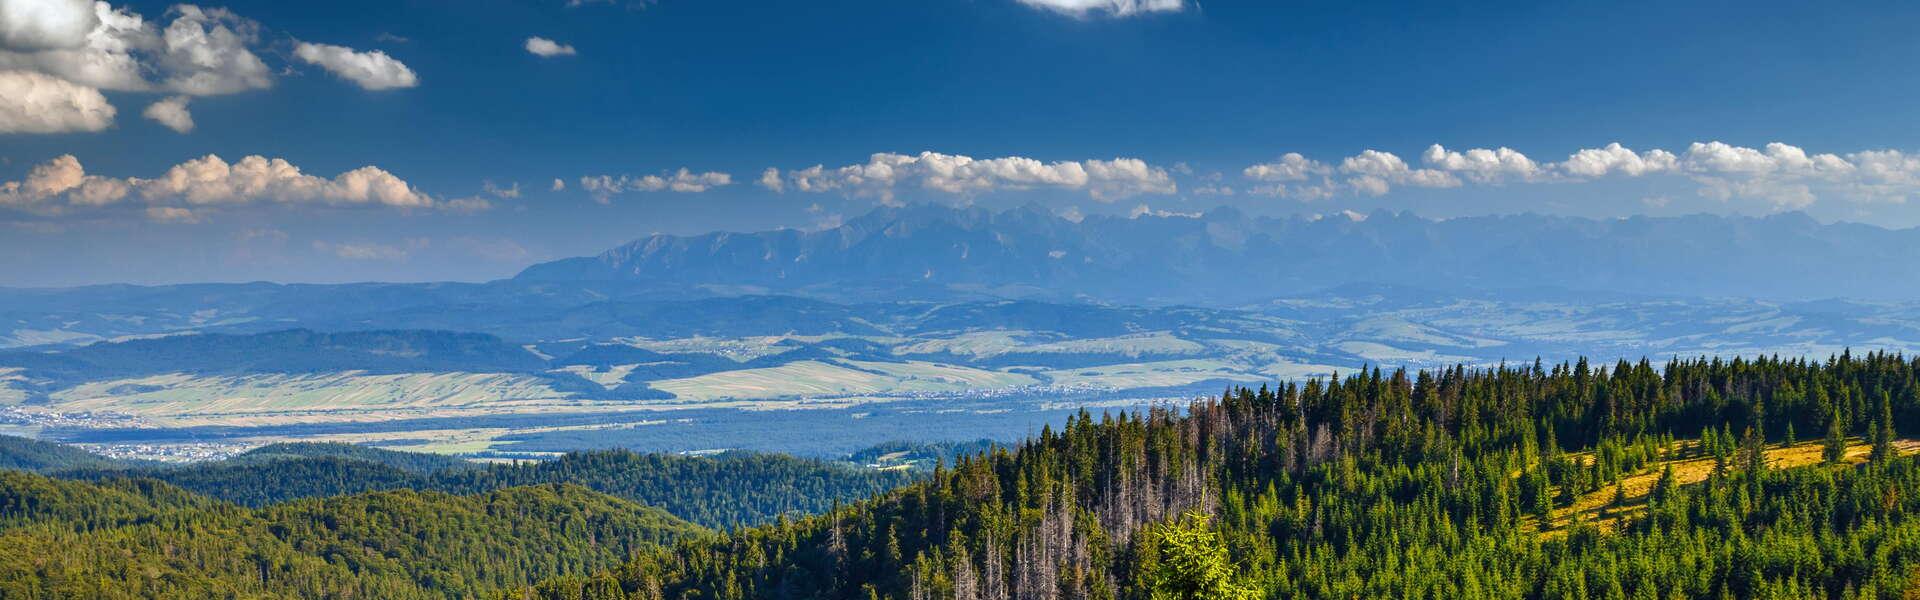 Widok na Gorce, w tle widok na Tatry. Wokół lasy i łąki